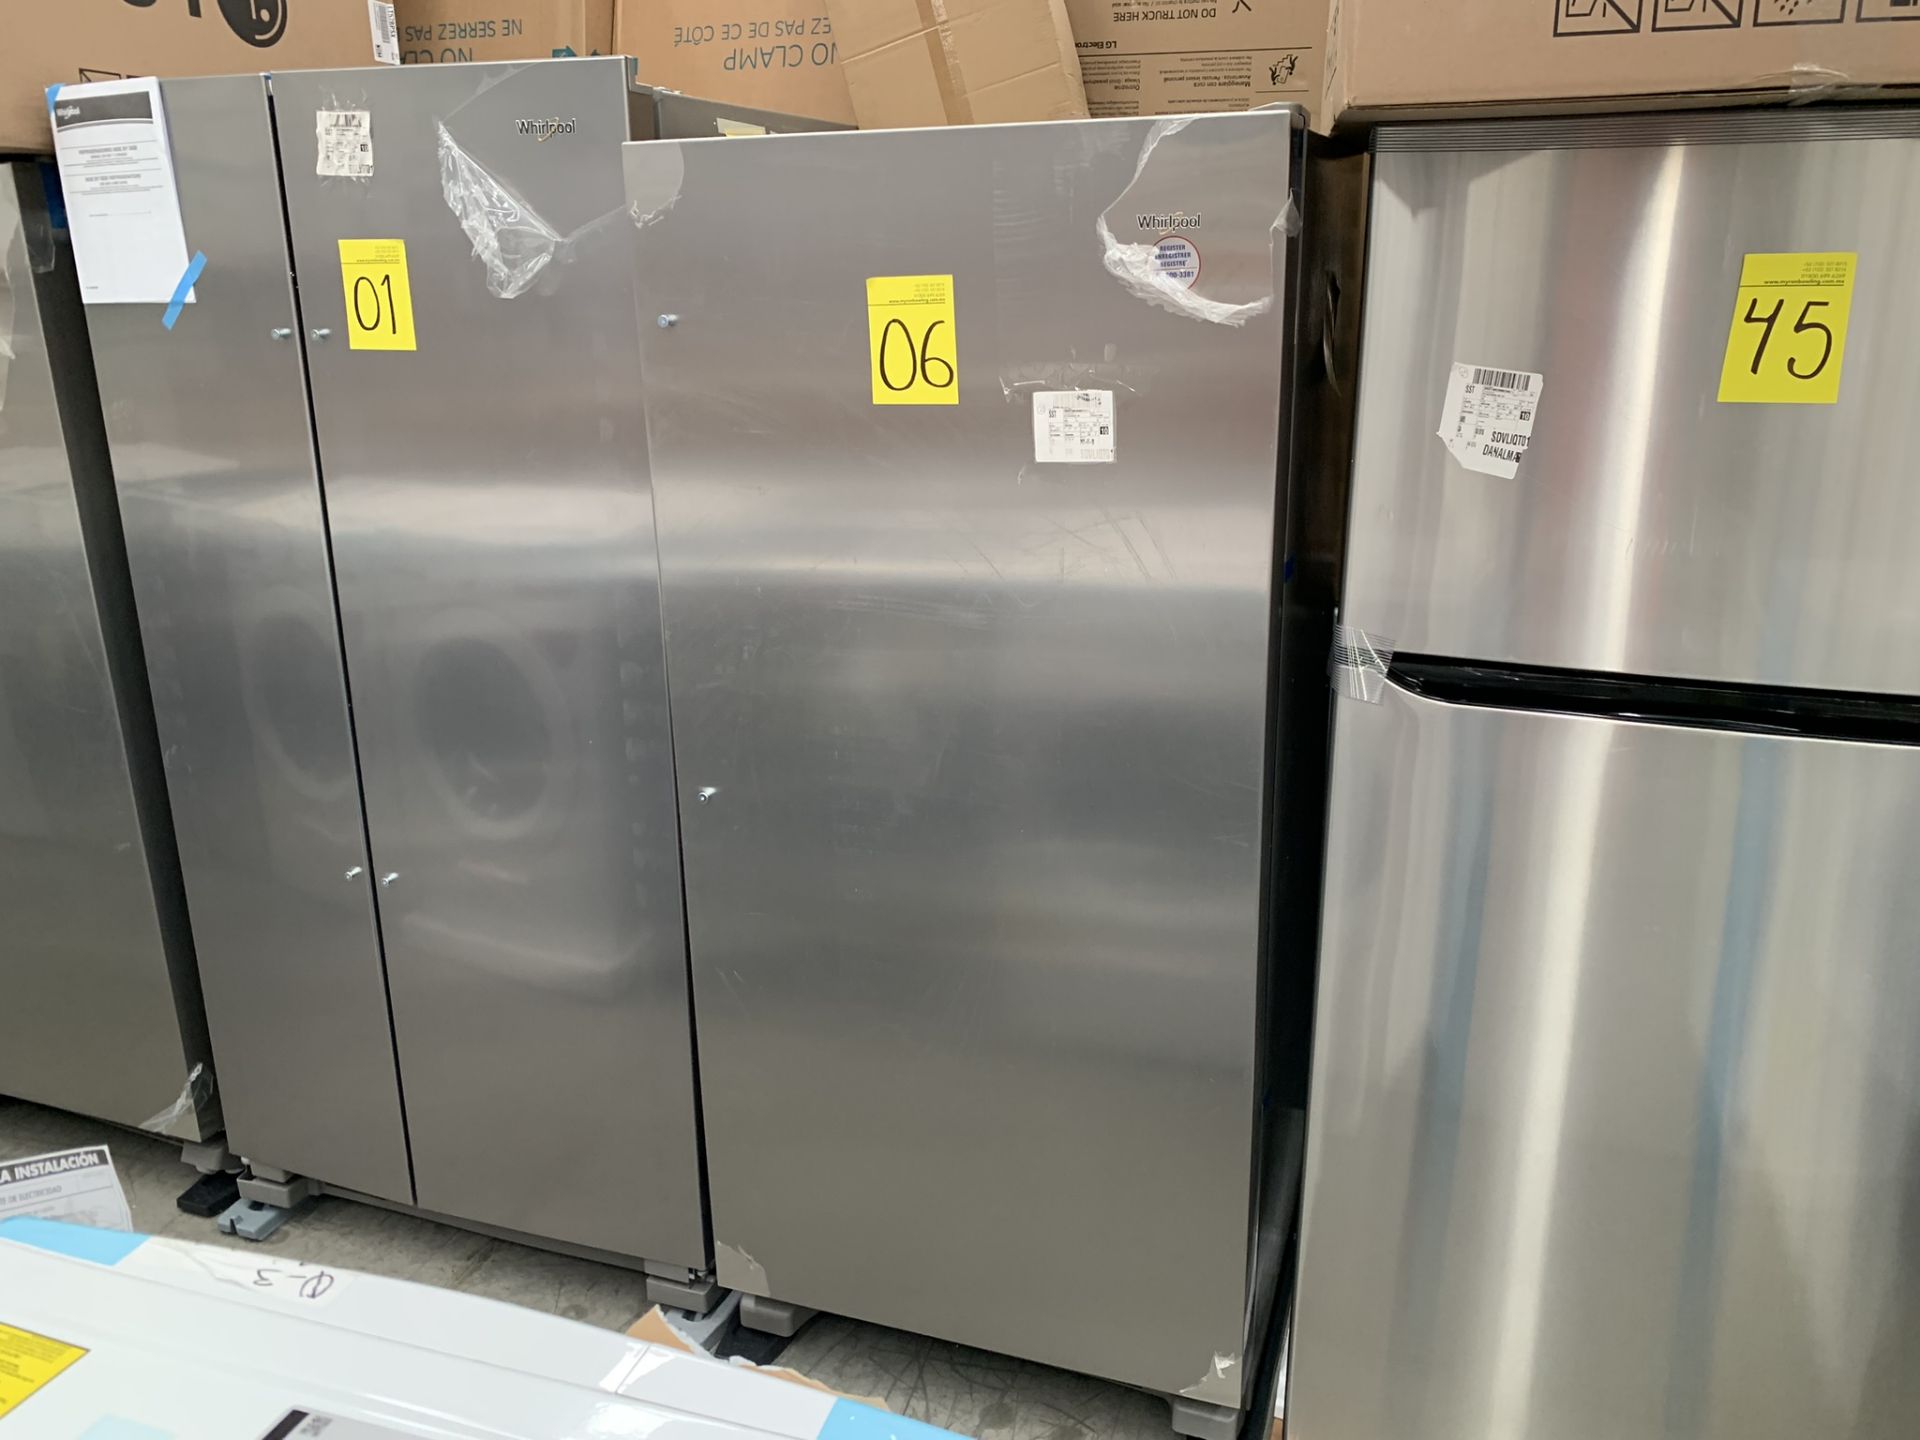 1 Refrigerador Marca Whirlpool, Modelo WSR57R18DM05, No de serie UB1703662 , Color Gris, LB-019111 - Image 4 of 8